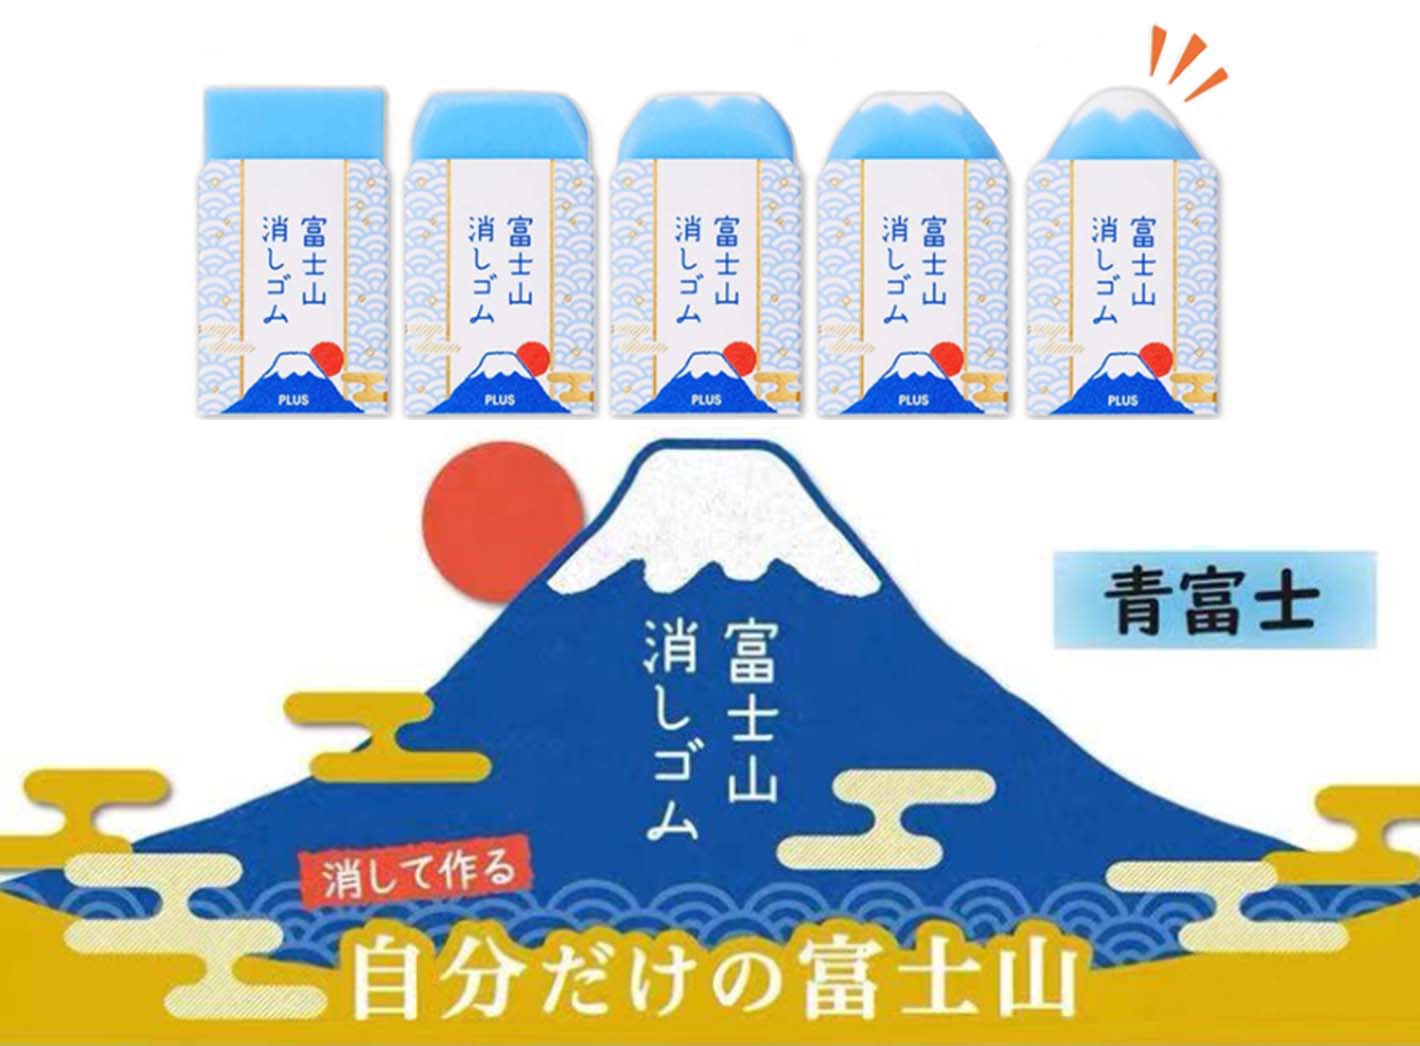 Plus Mt. Fuji Eraser